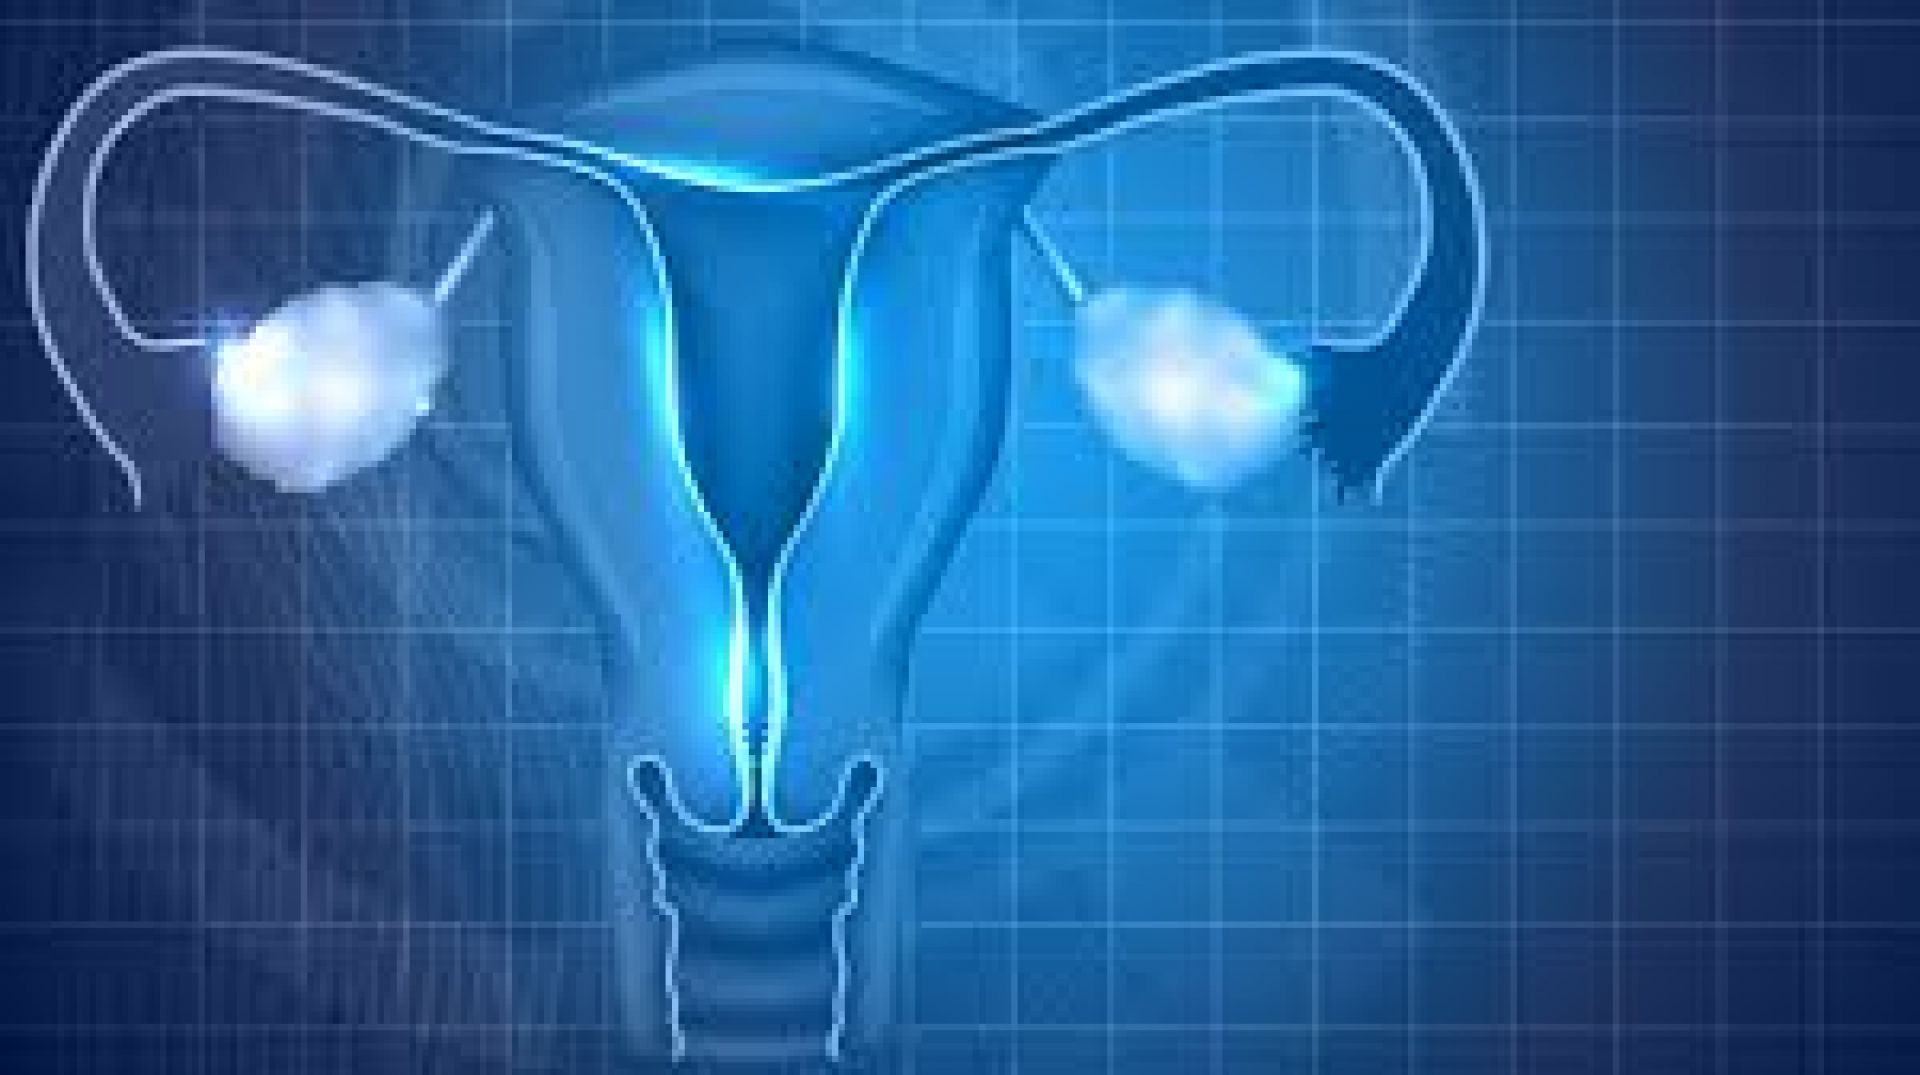 2ο Εκπαιδευτικό σεμινάριο ενδοσκοπικής χειρουργικής γυναικείου γεννητικού συστήματος